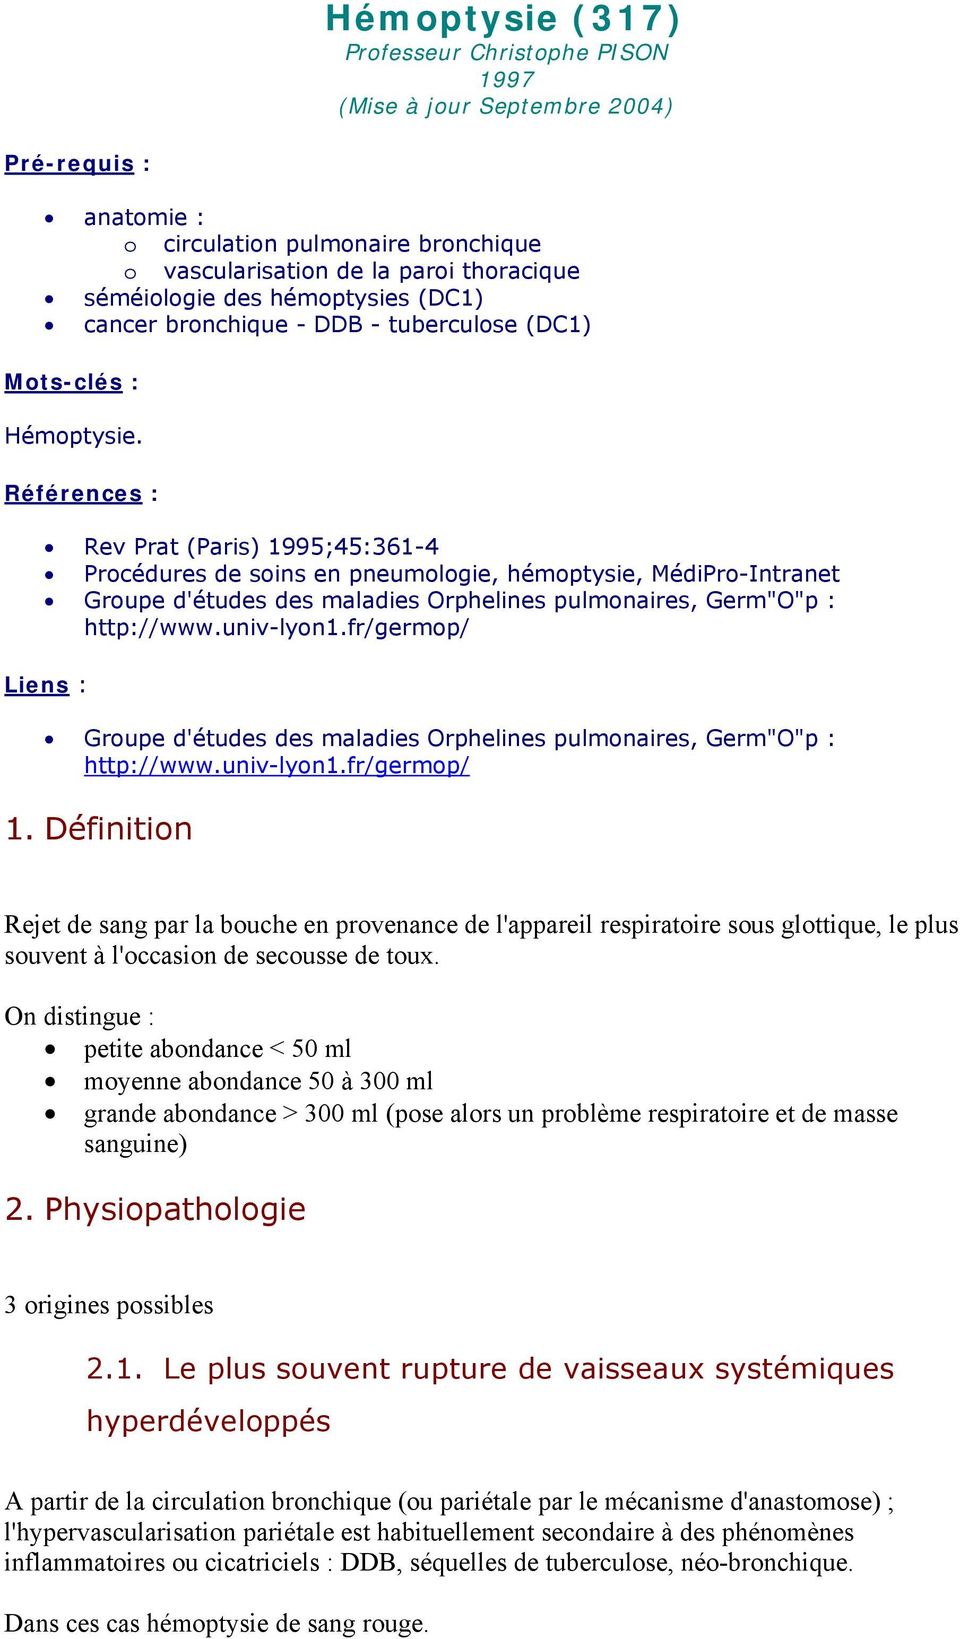 Références : Rev Prat (Paris) 1995;45:361-4 Procédures de soins en pneumologie, hémoptysie, MédiPro-Intranet Groupe d'études des maladies Orphelines pulmonaires, Germ"O"p : http://www.univ-lyon1.